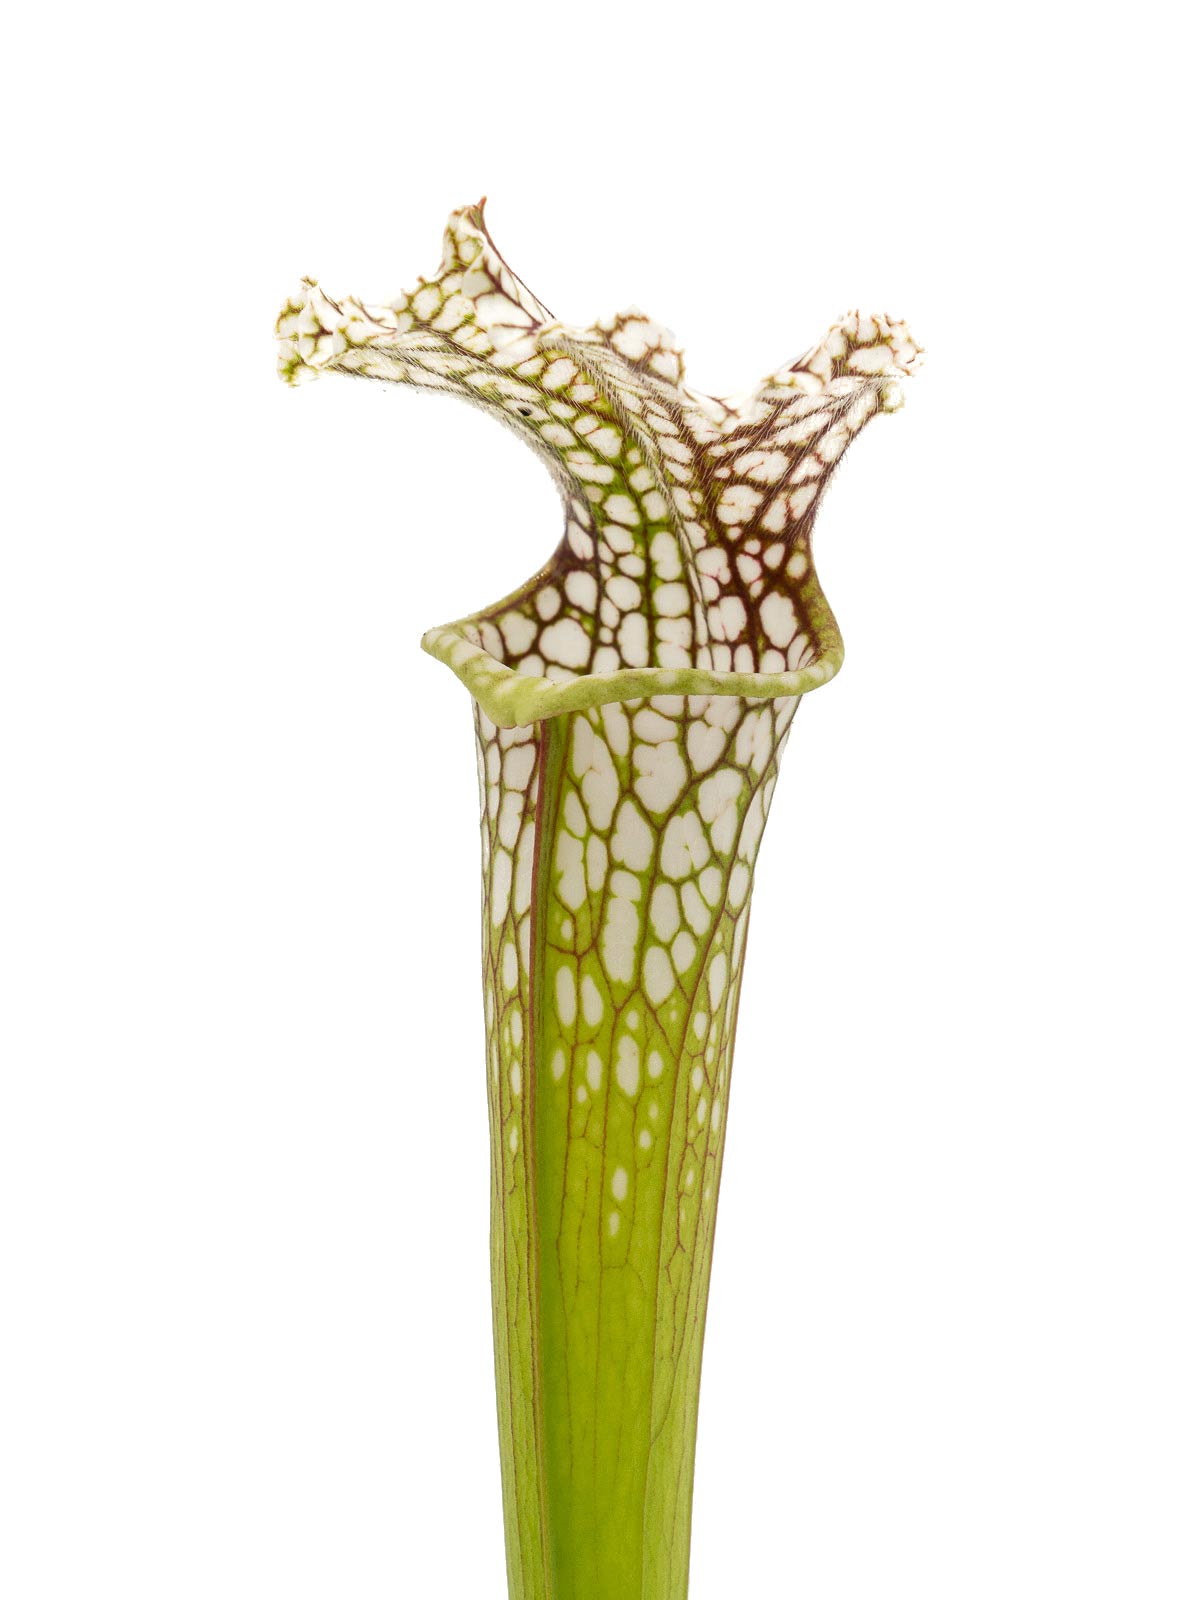 Sarracenia leucophylla - Peter Zeller